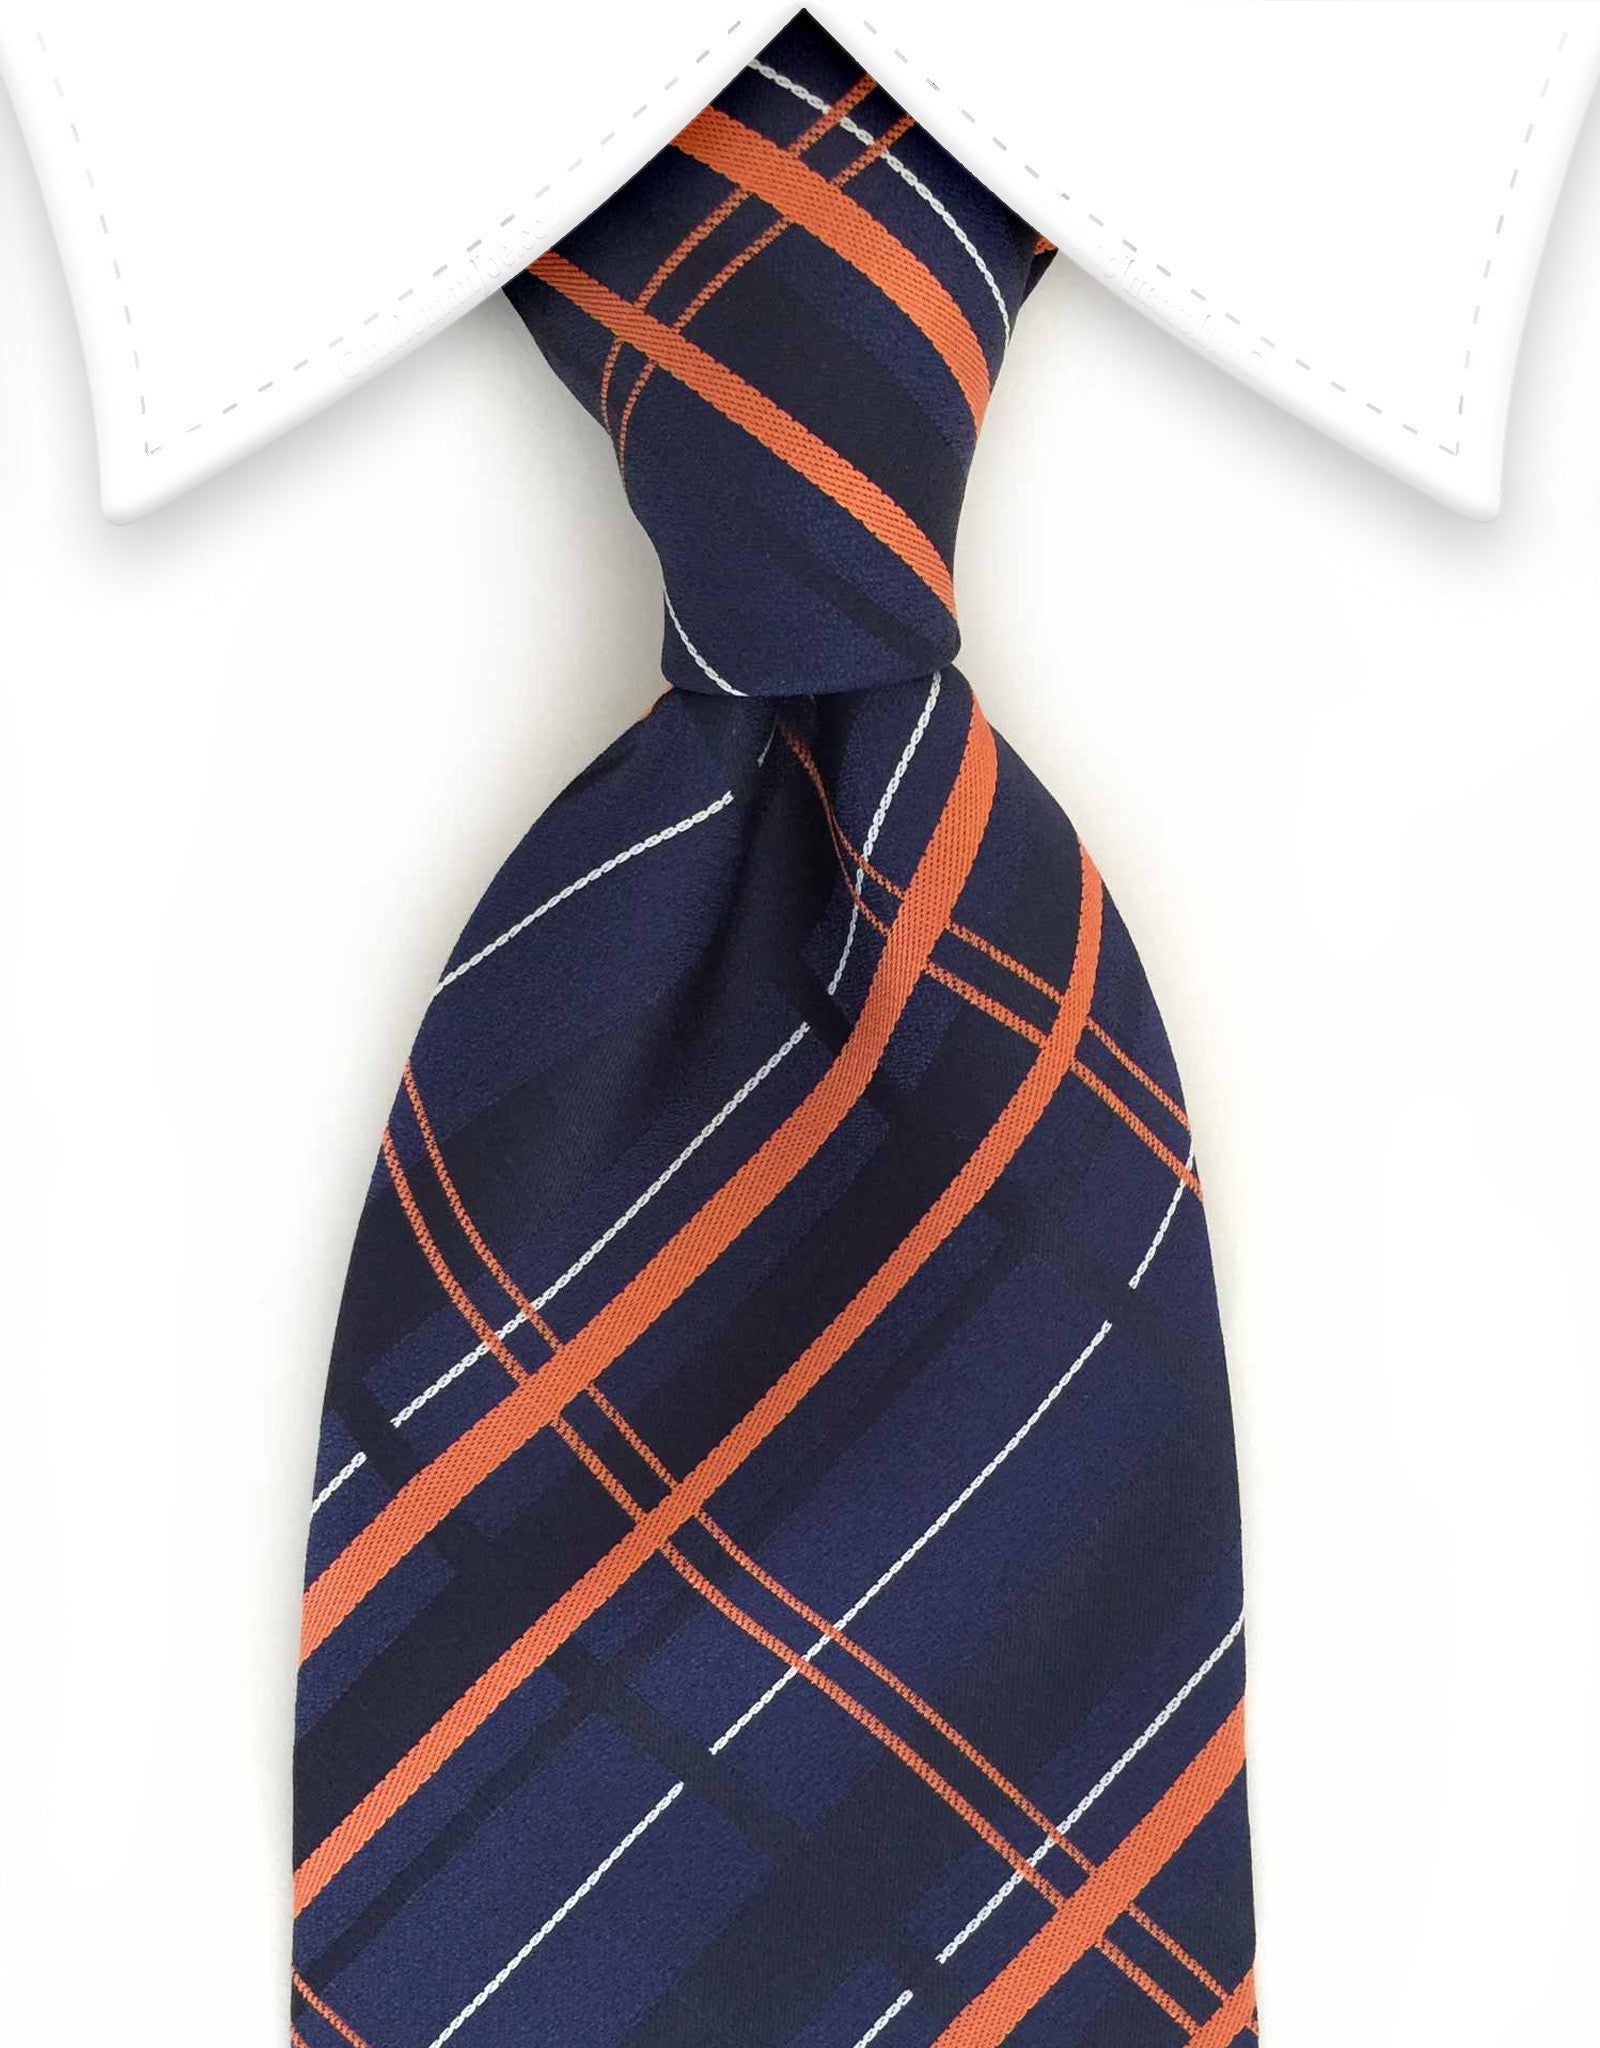 Navy blue and orange plaid necktie